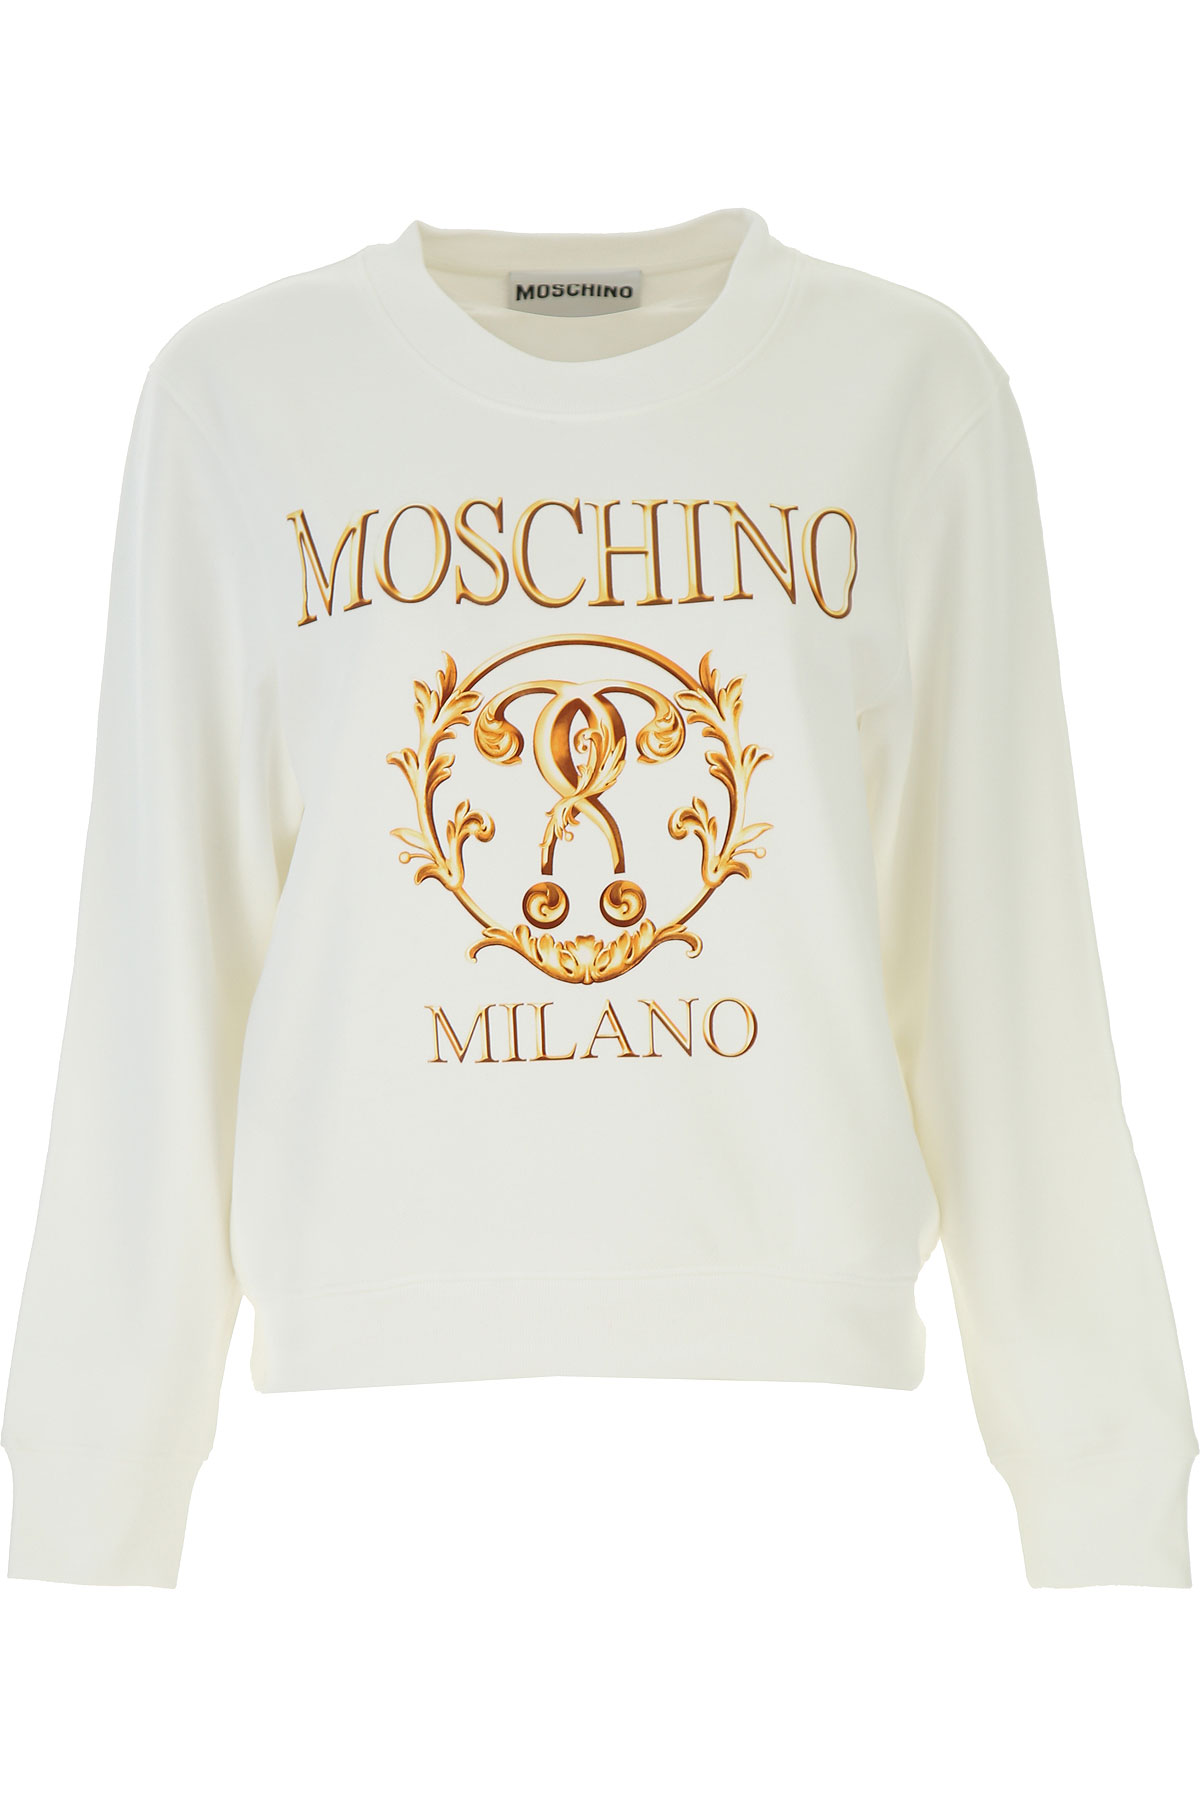 Moschino Sweatshirt für Damen, Kapuzenpulli, Hoodie, Sweats Günstig im Sale, Weiss, Baumwolle, 2017, 44 M